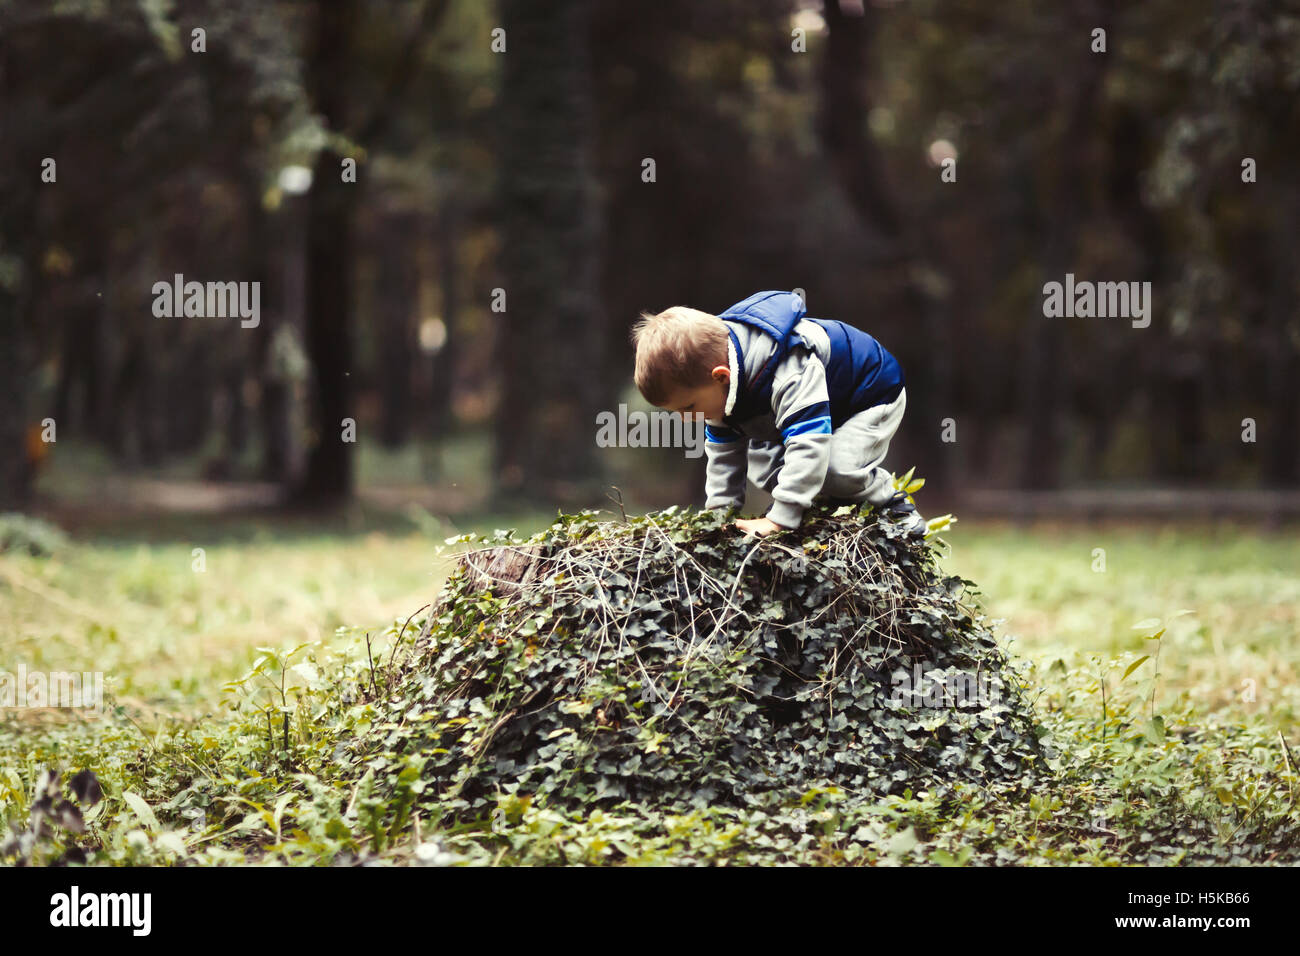 Kind im Park Klettern und spielen Stockfoto